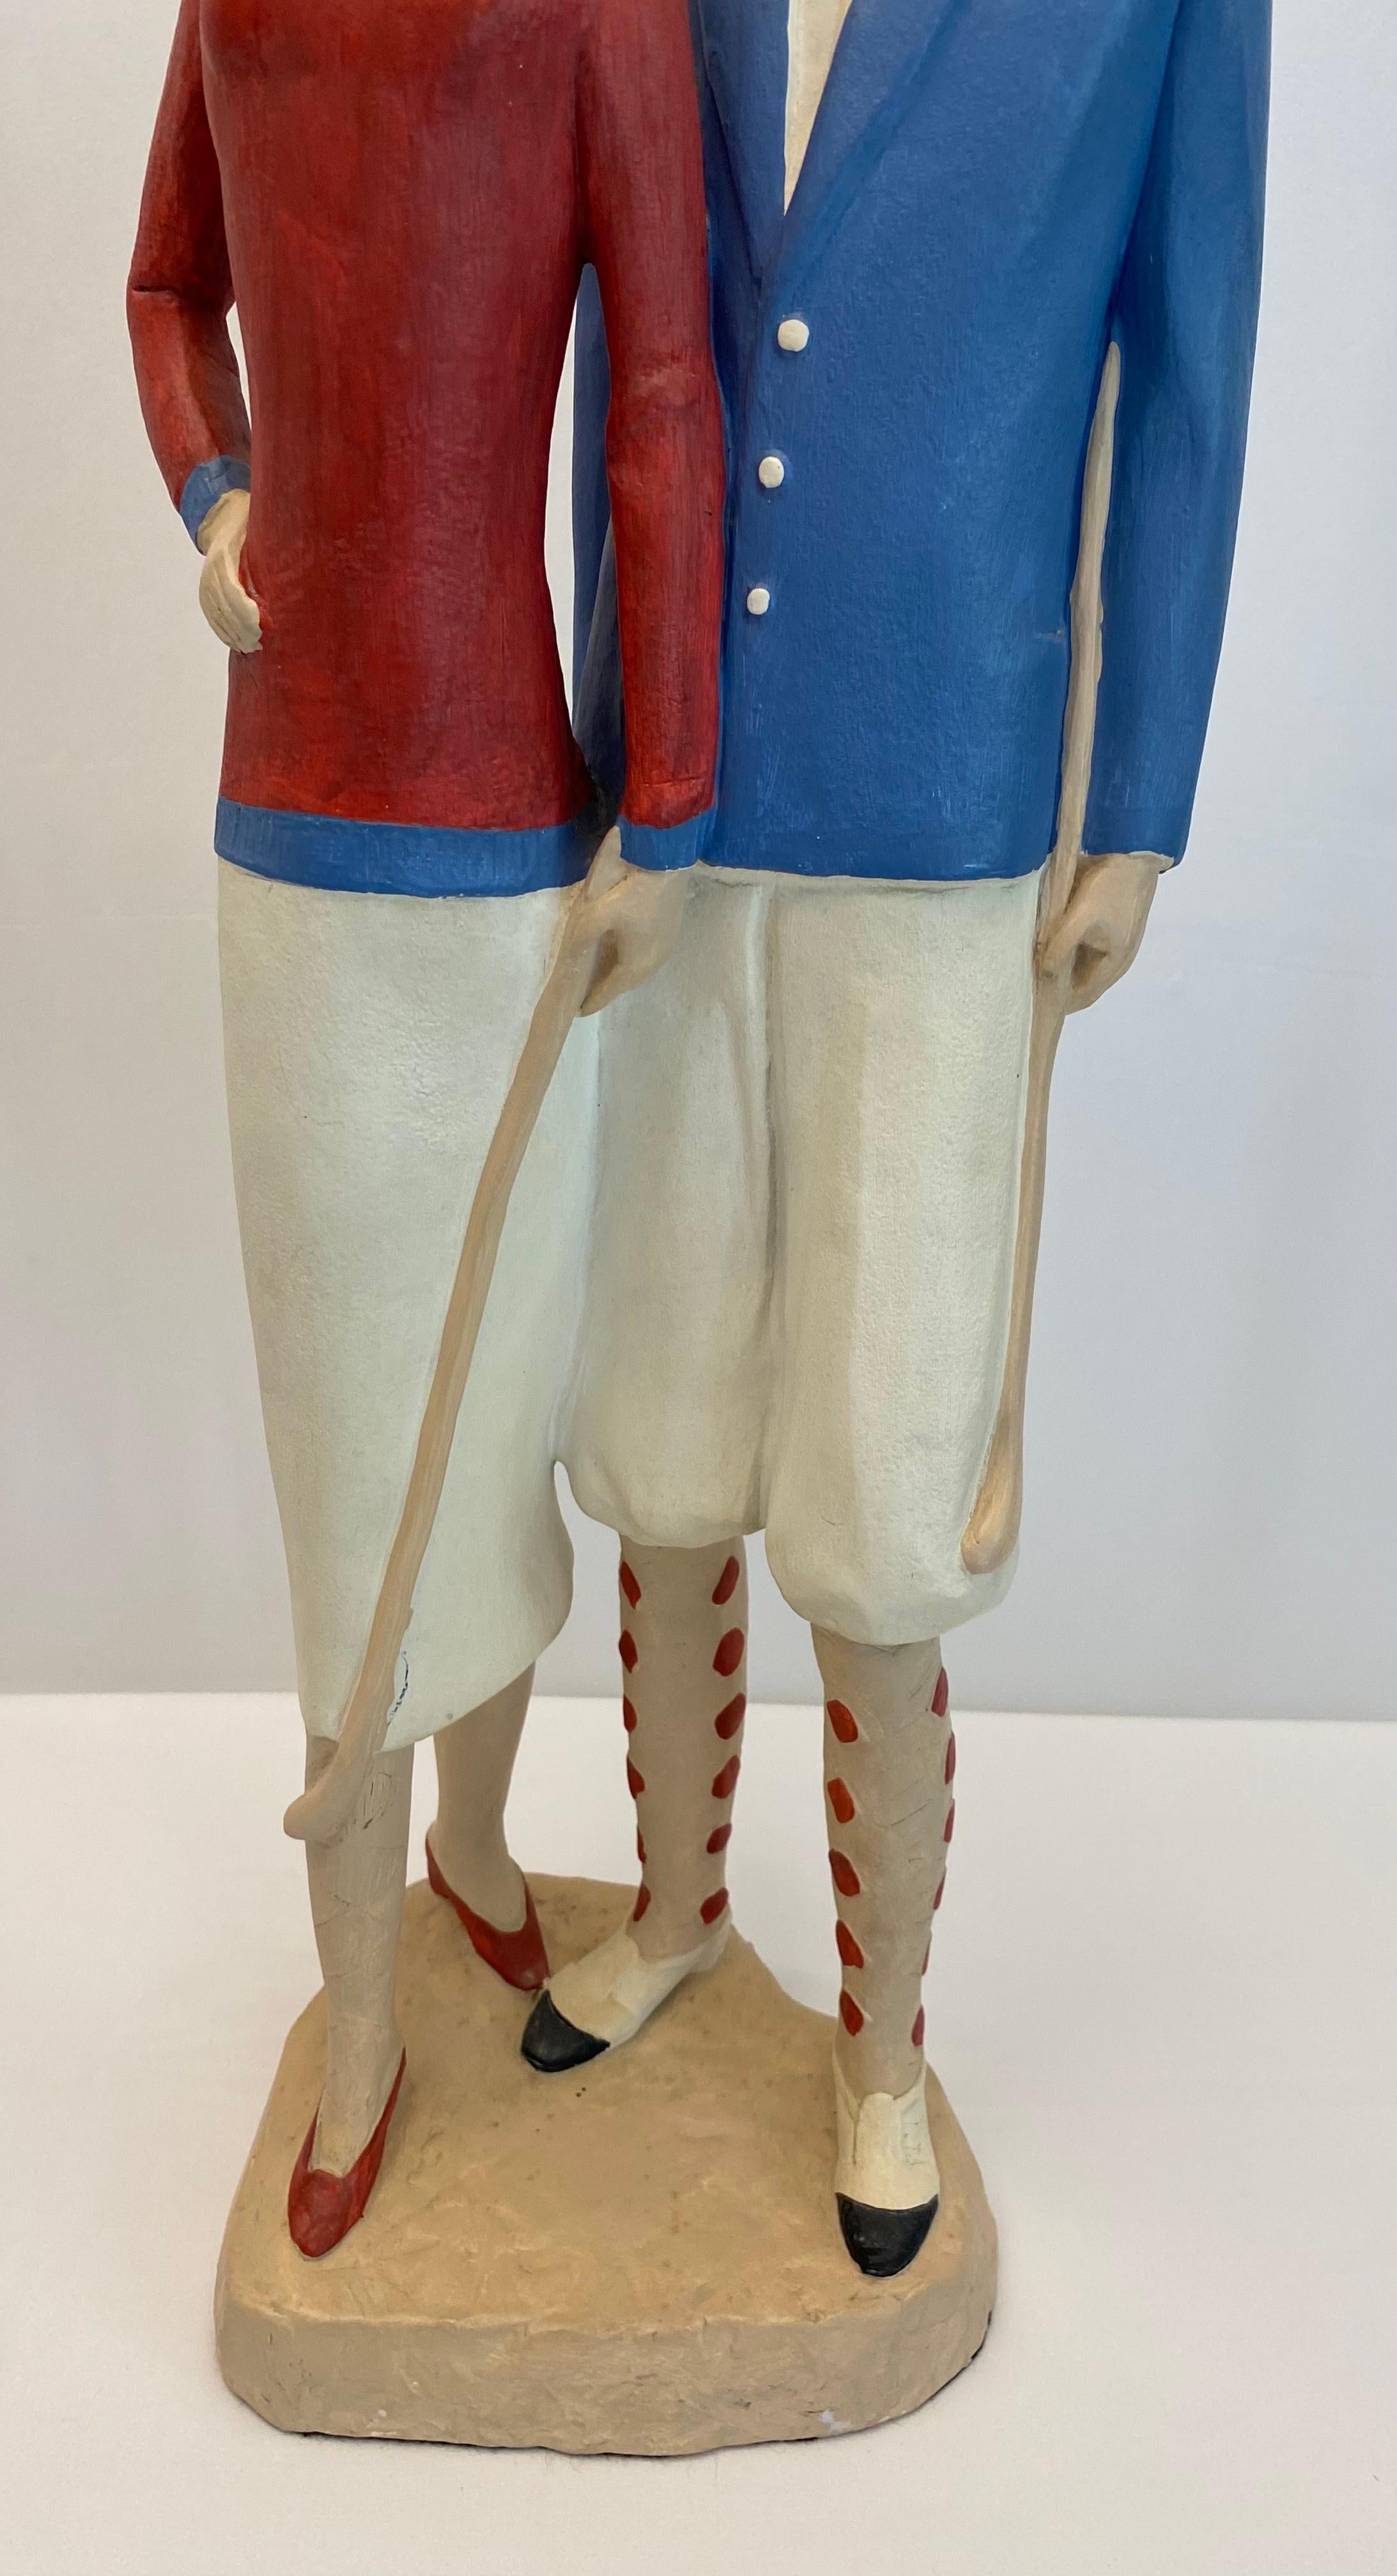 Wir bieten Ihnen eine wunderschöne Tischskulptur von zwei Golfern aus dem Jahr 1987 an. 
Diese dekorative Skulptur im Art-Déco-Stil ist aus Gips gefertigt und herrlich schwer. Handgegossen und bemalt. 

Ein tolles Geschenk für Golfliebhaber oder